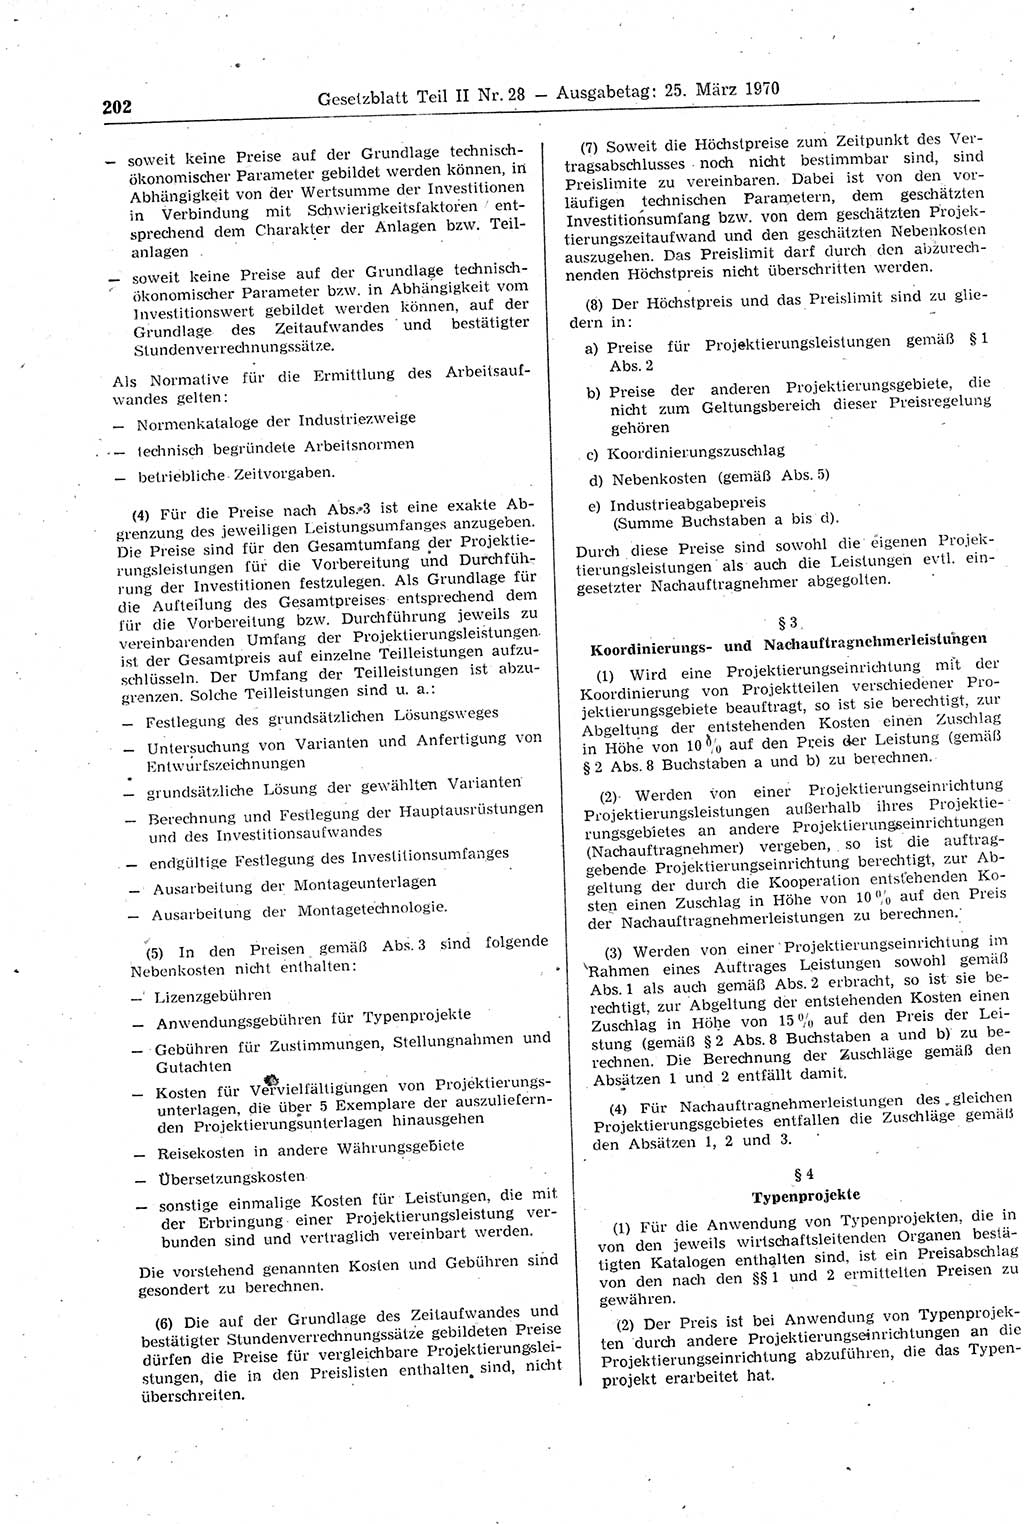 Gesetzblatt (GBl.) der Deutschen Demokratischen Republik (DDR) Teil ⅠⅠ 1970, Seite 202 (GBl. DDR ⅠⅠ 1970, S. 202)